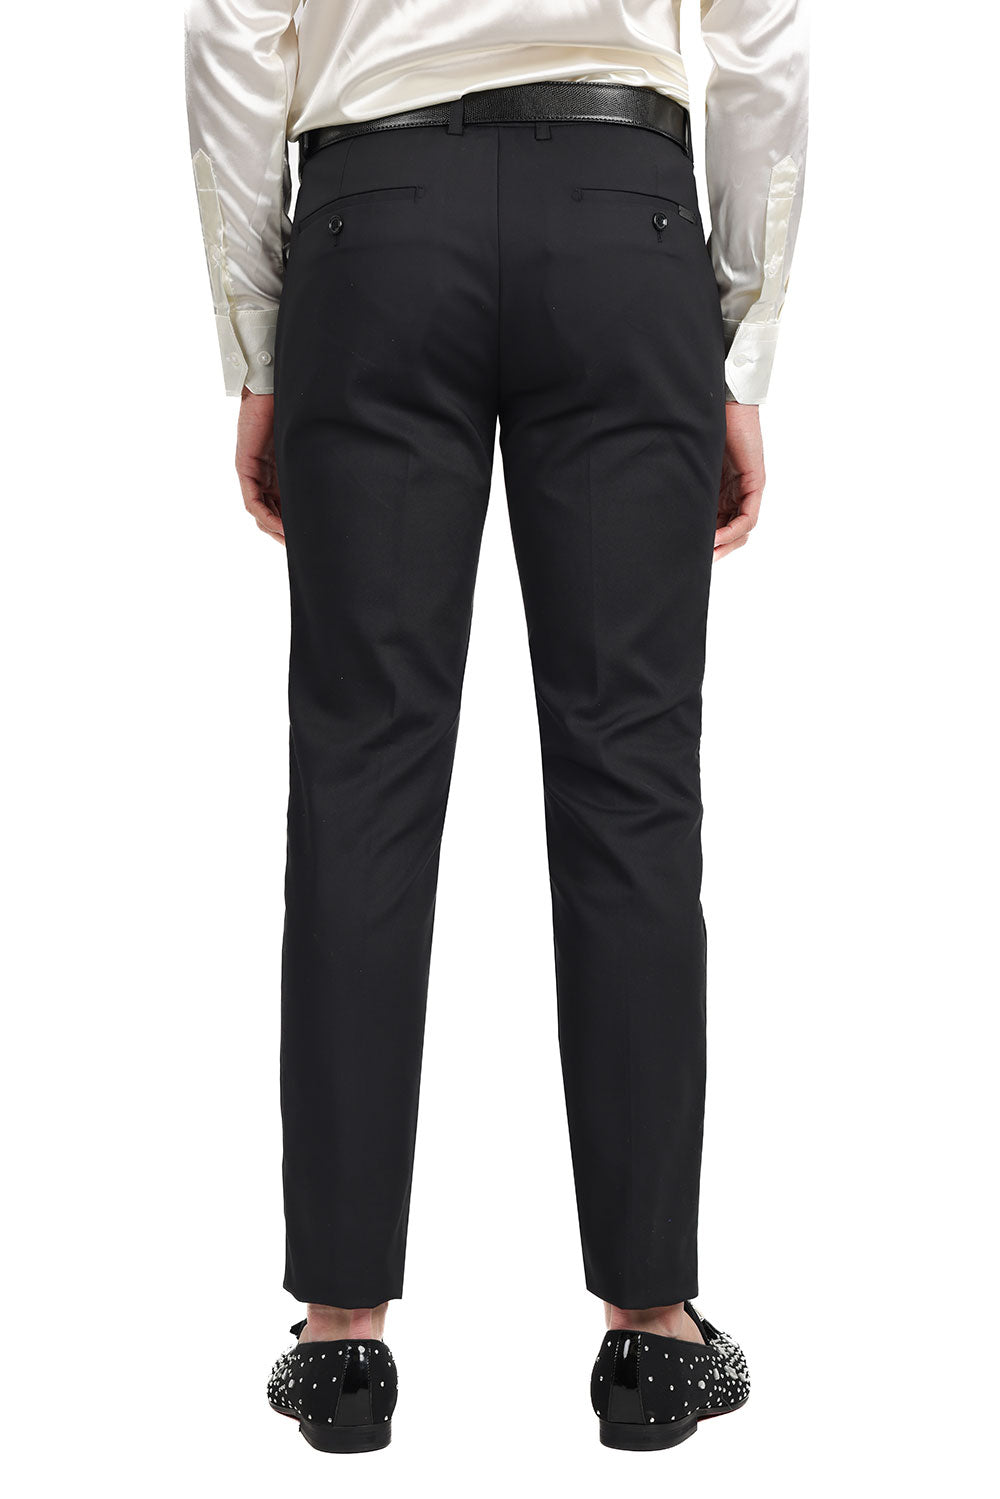 Barabas Men's Premium Plain Solid Color Chino Dress Pants 2CP3080 Black